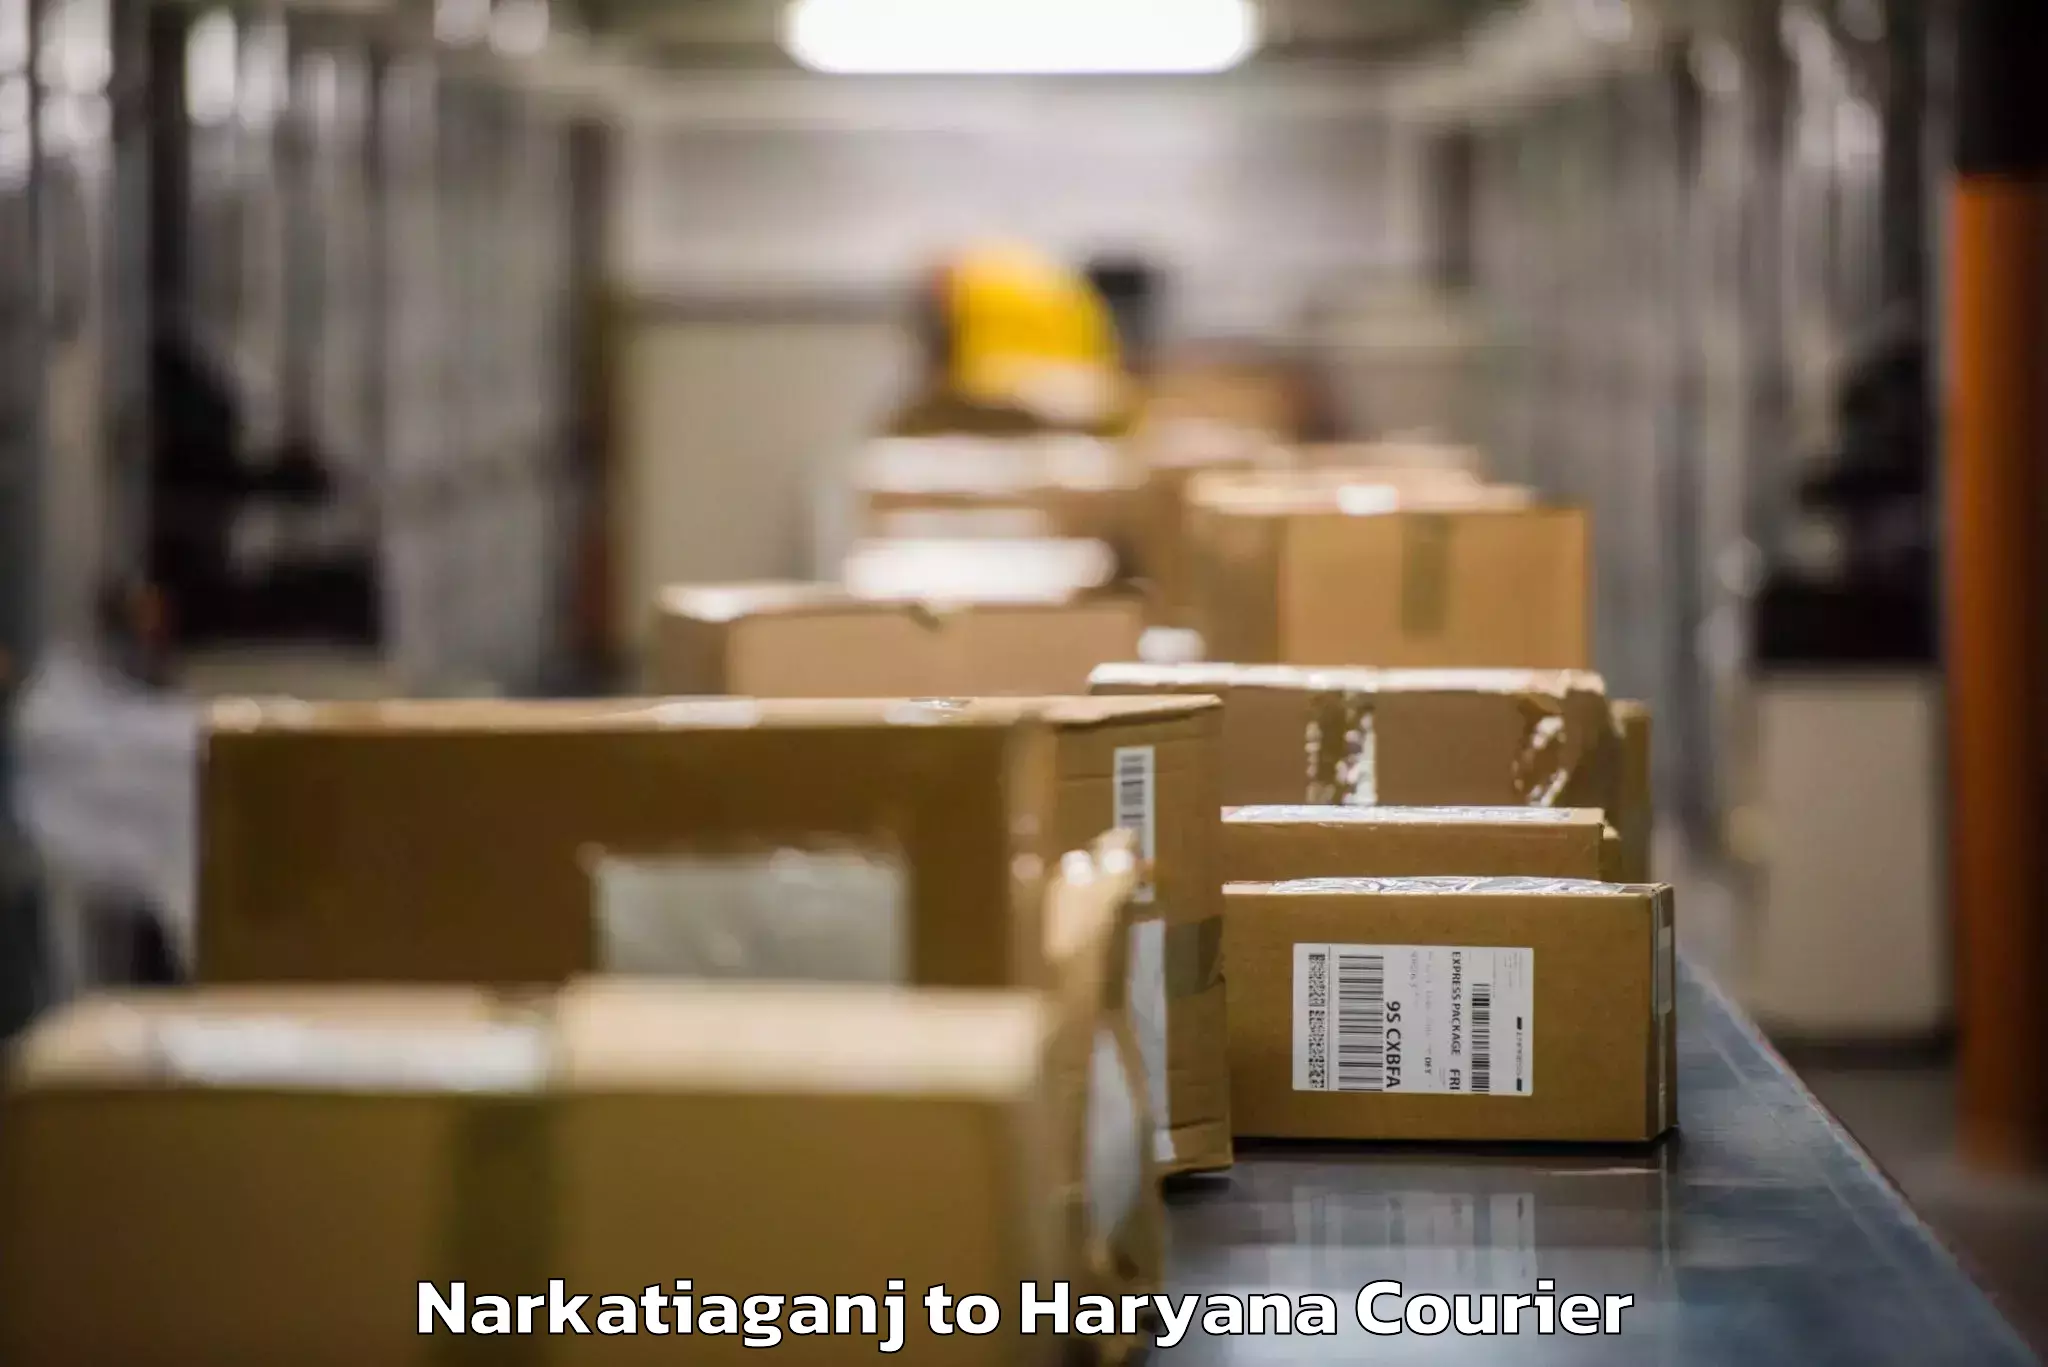 Baggage shipping schedule Narkatiaganj to Kurukshetra University